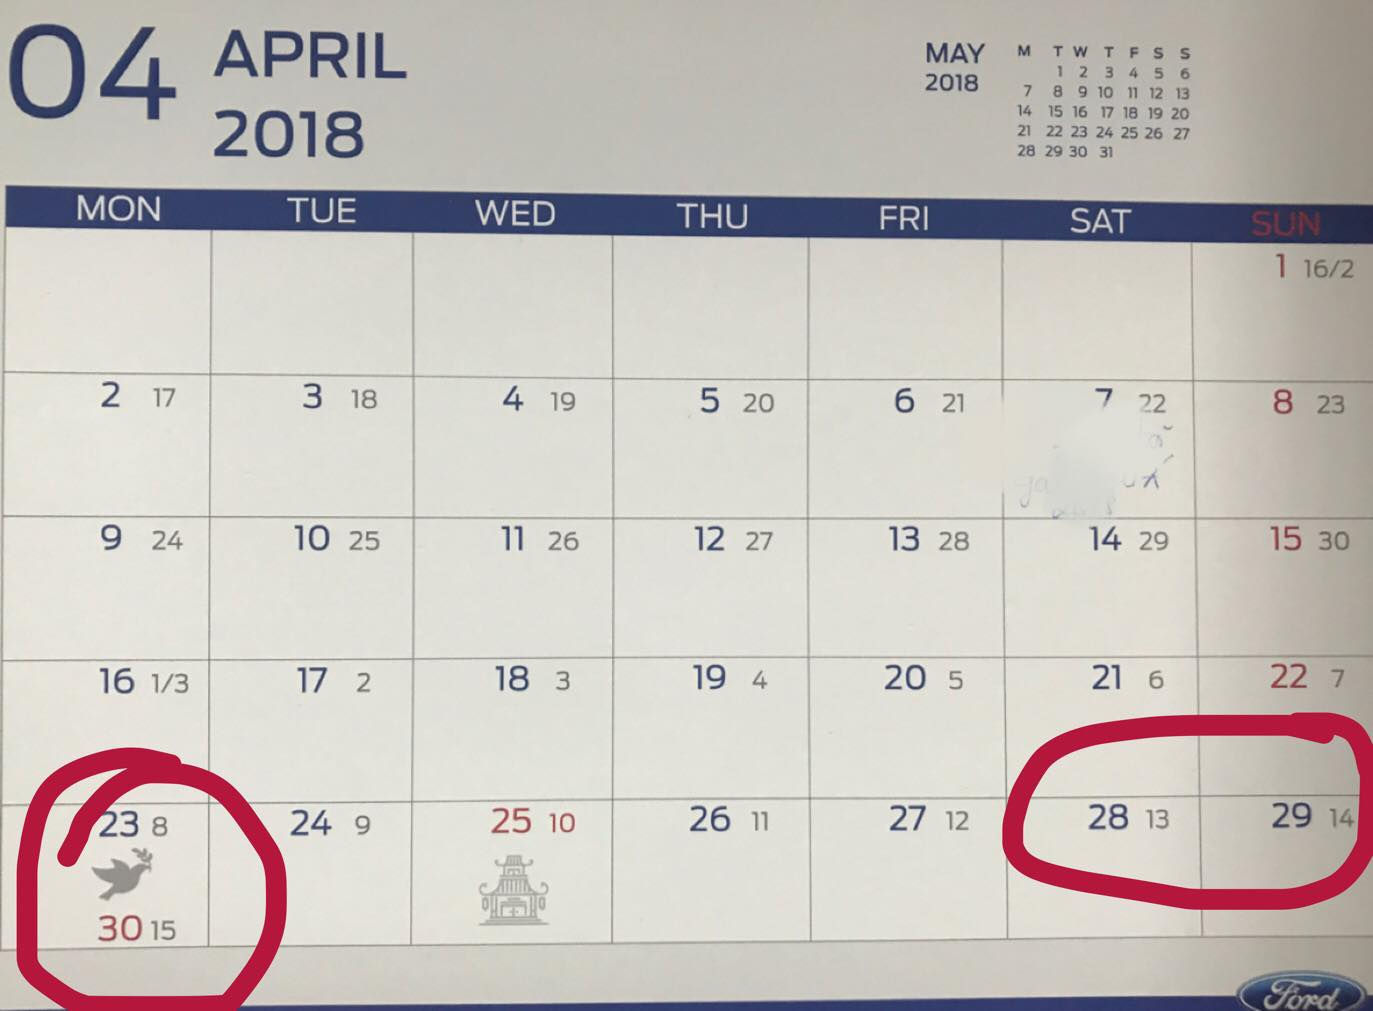 Sau Tết Nguyên đán, kỳ nghỉ lễ tiếp theo sẽ được nghỉ bao nhiêu ngày?